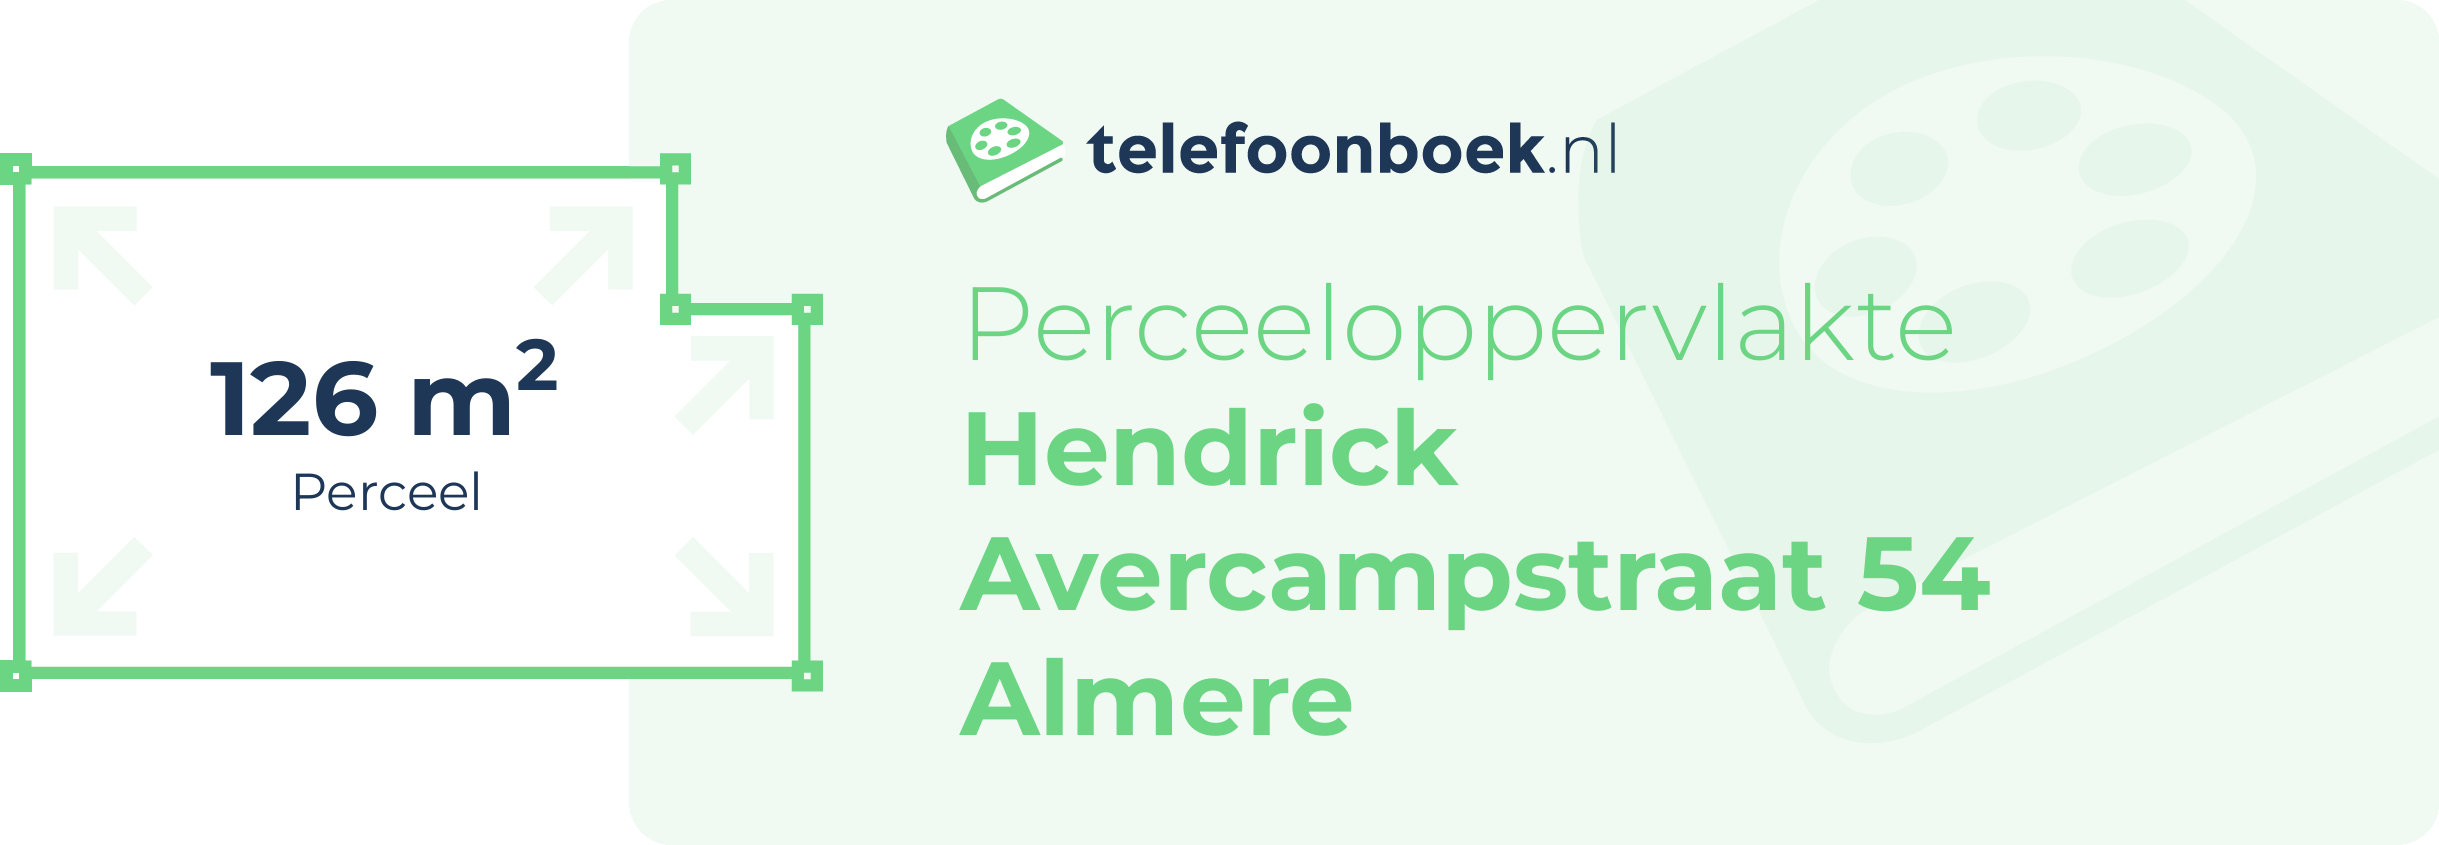 Perceeloppervlakte Hendrick Avercampstraat 54 Almere